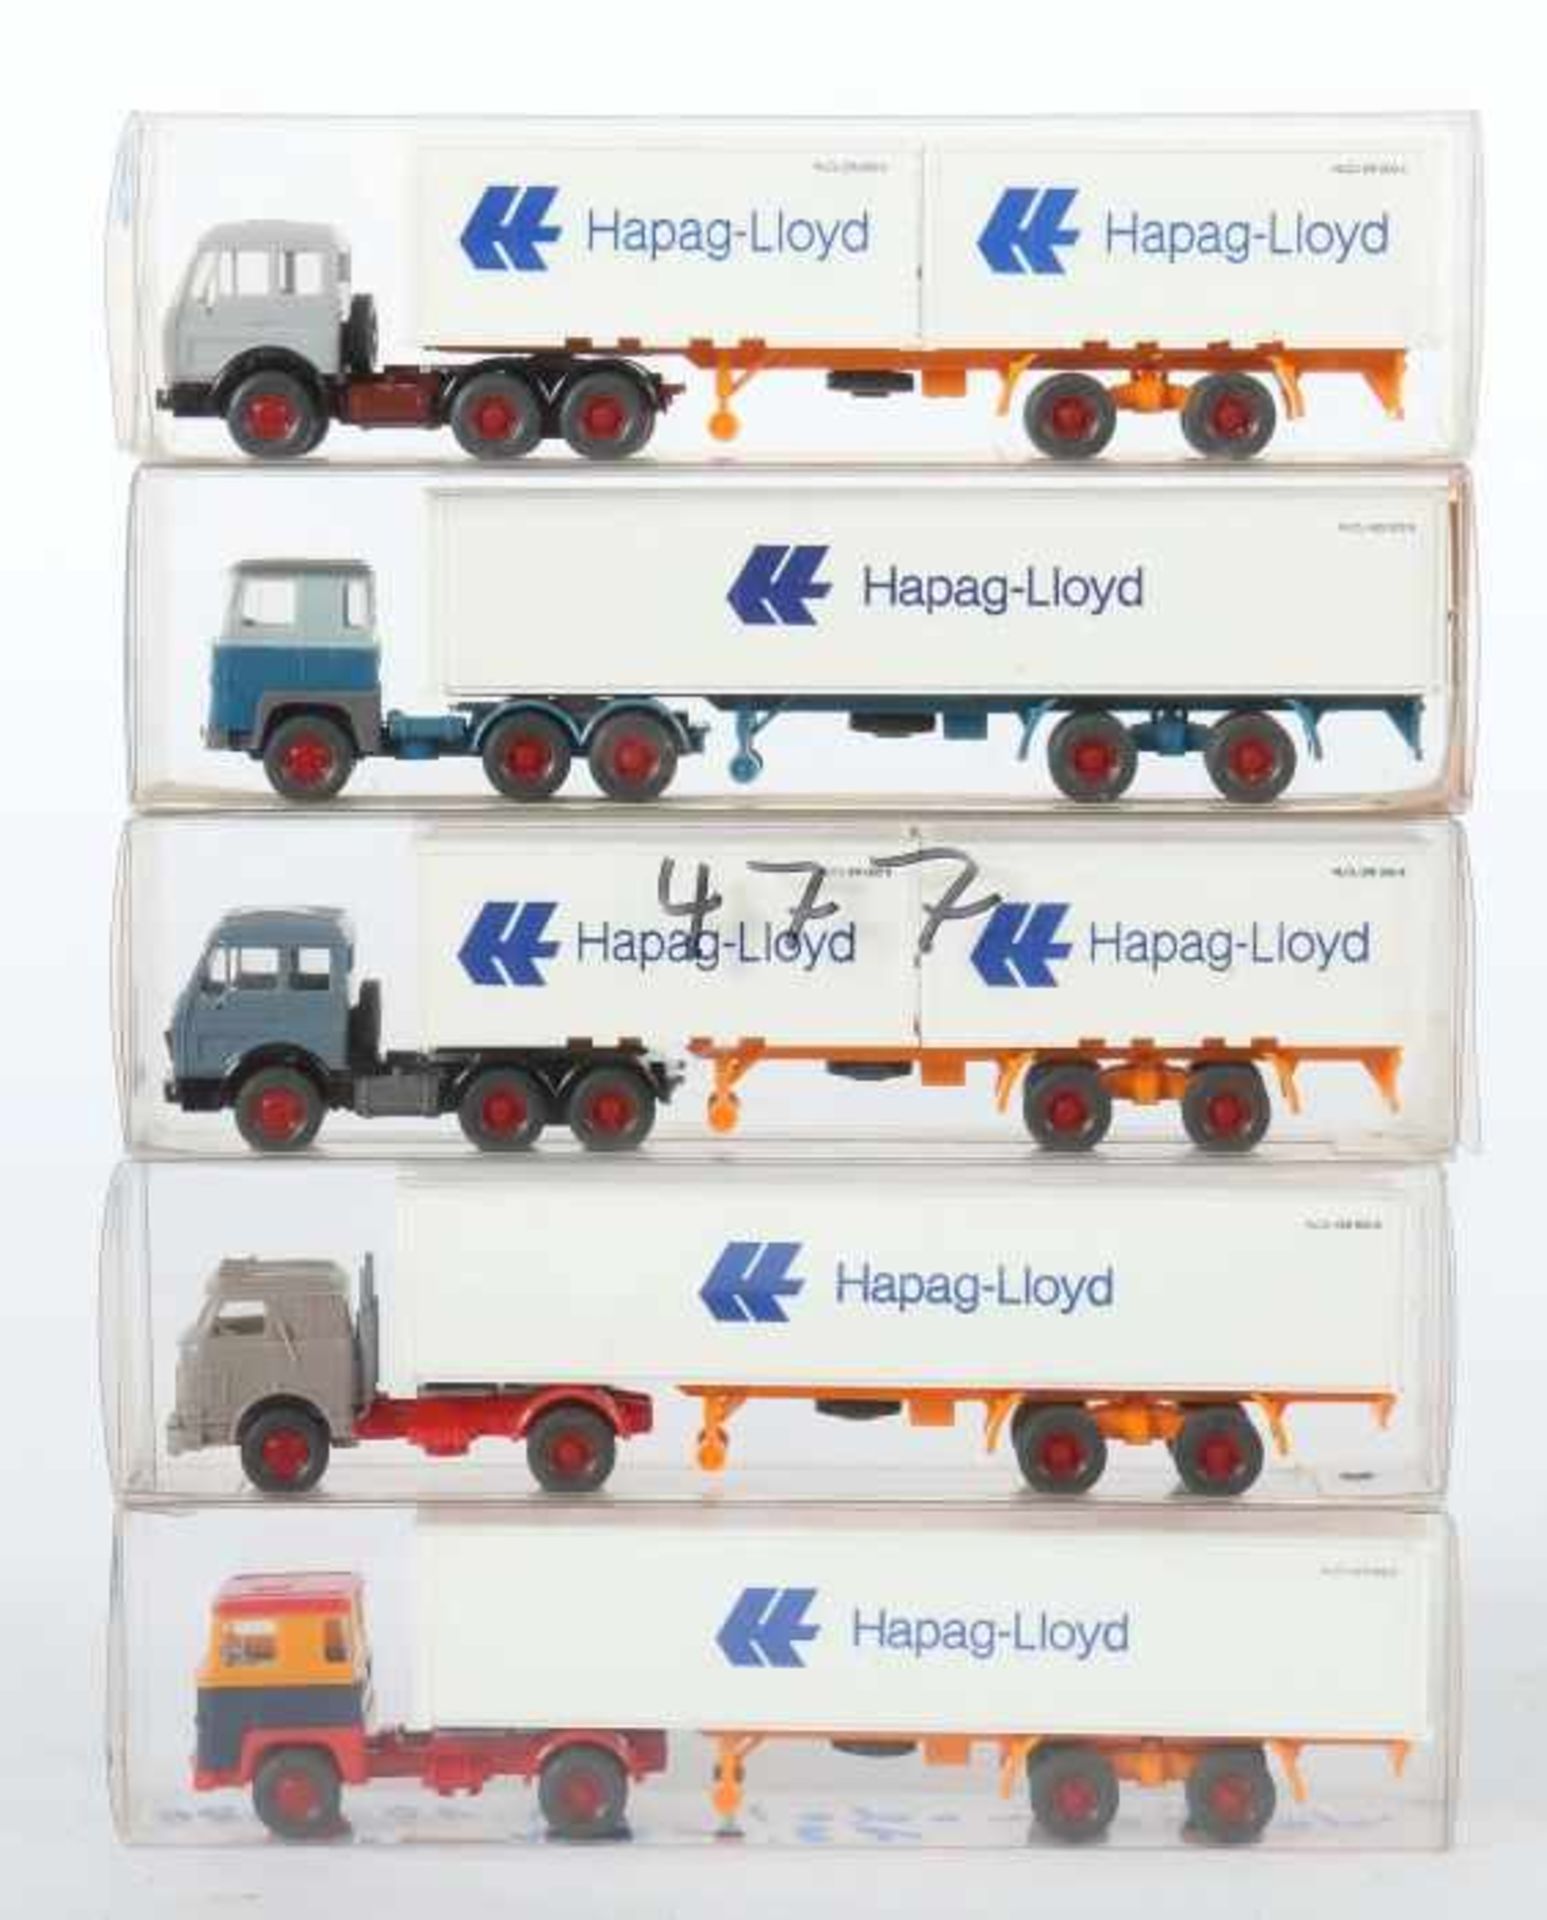 5 Hapag-Lloyd Container-Sattelzüge Wiking, M: 1:87, 2x Mercedes-Benz 16325, versch. Farbgebungen, 1x